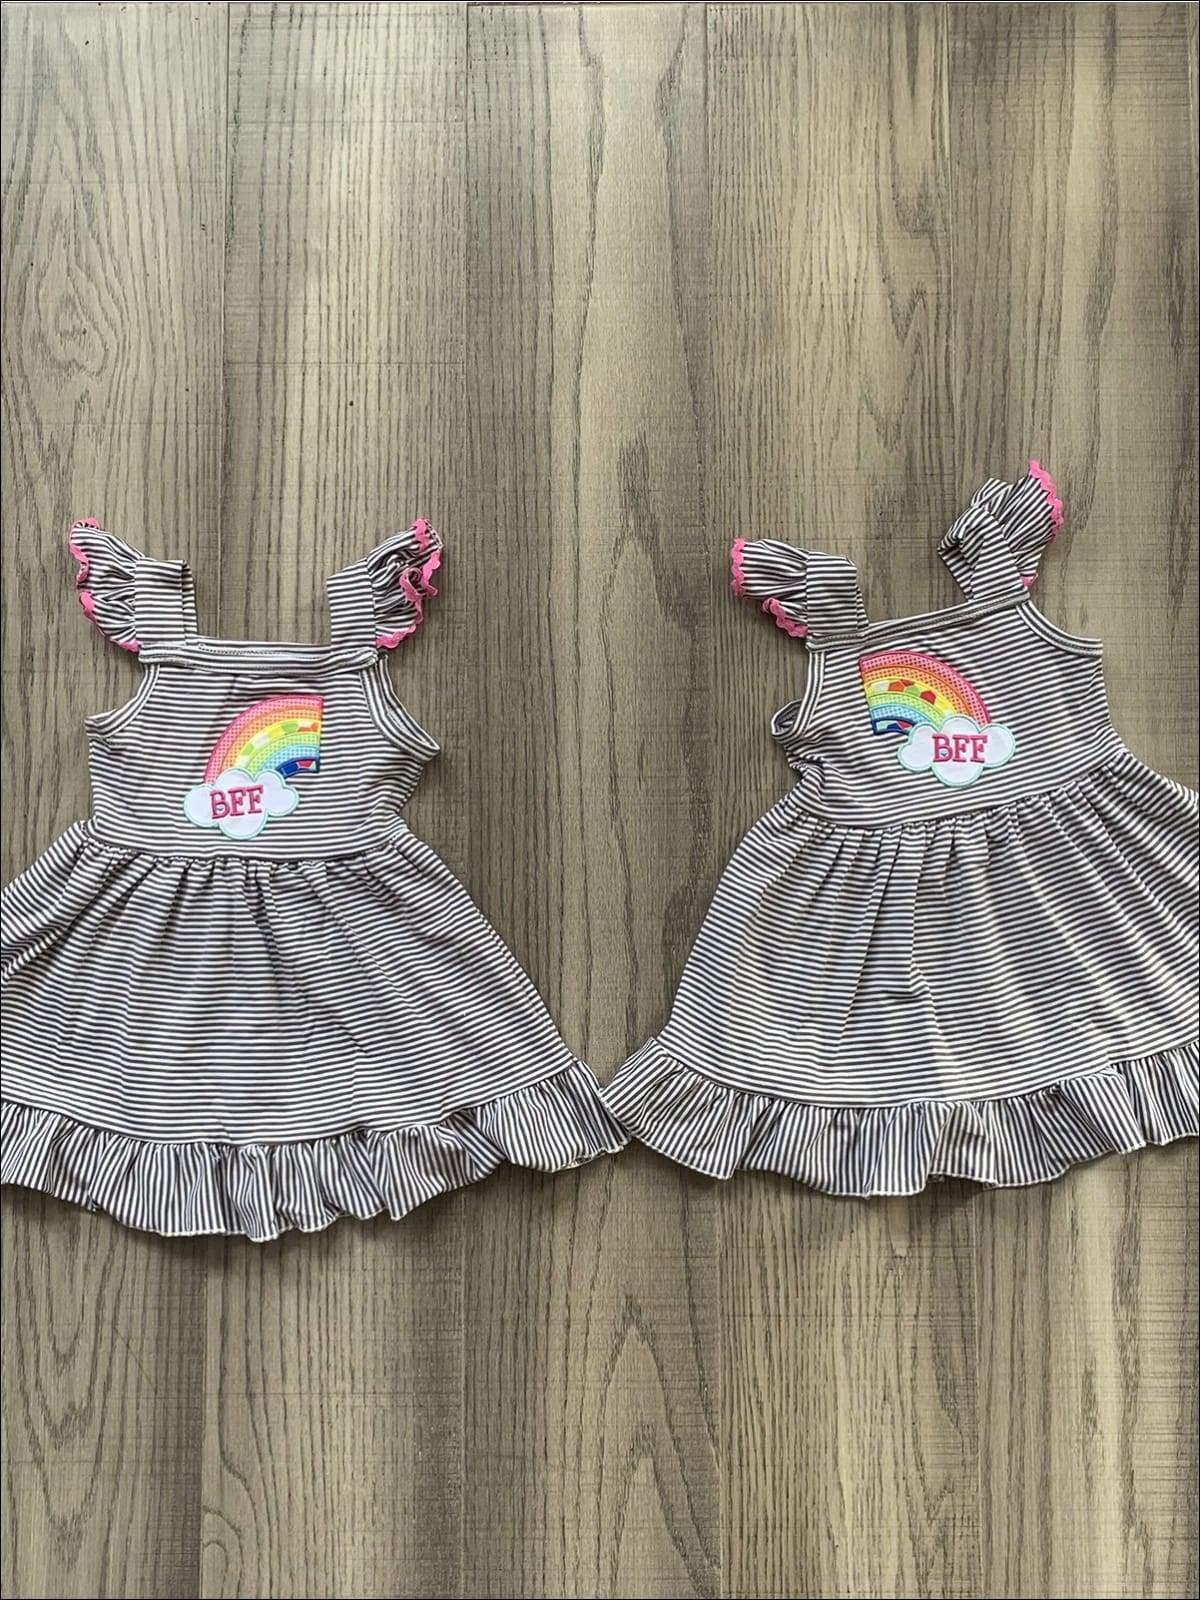 Girls Spring Dress | Matching Flutter Sleeve BFF Rainbow Ruffle Dress